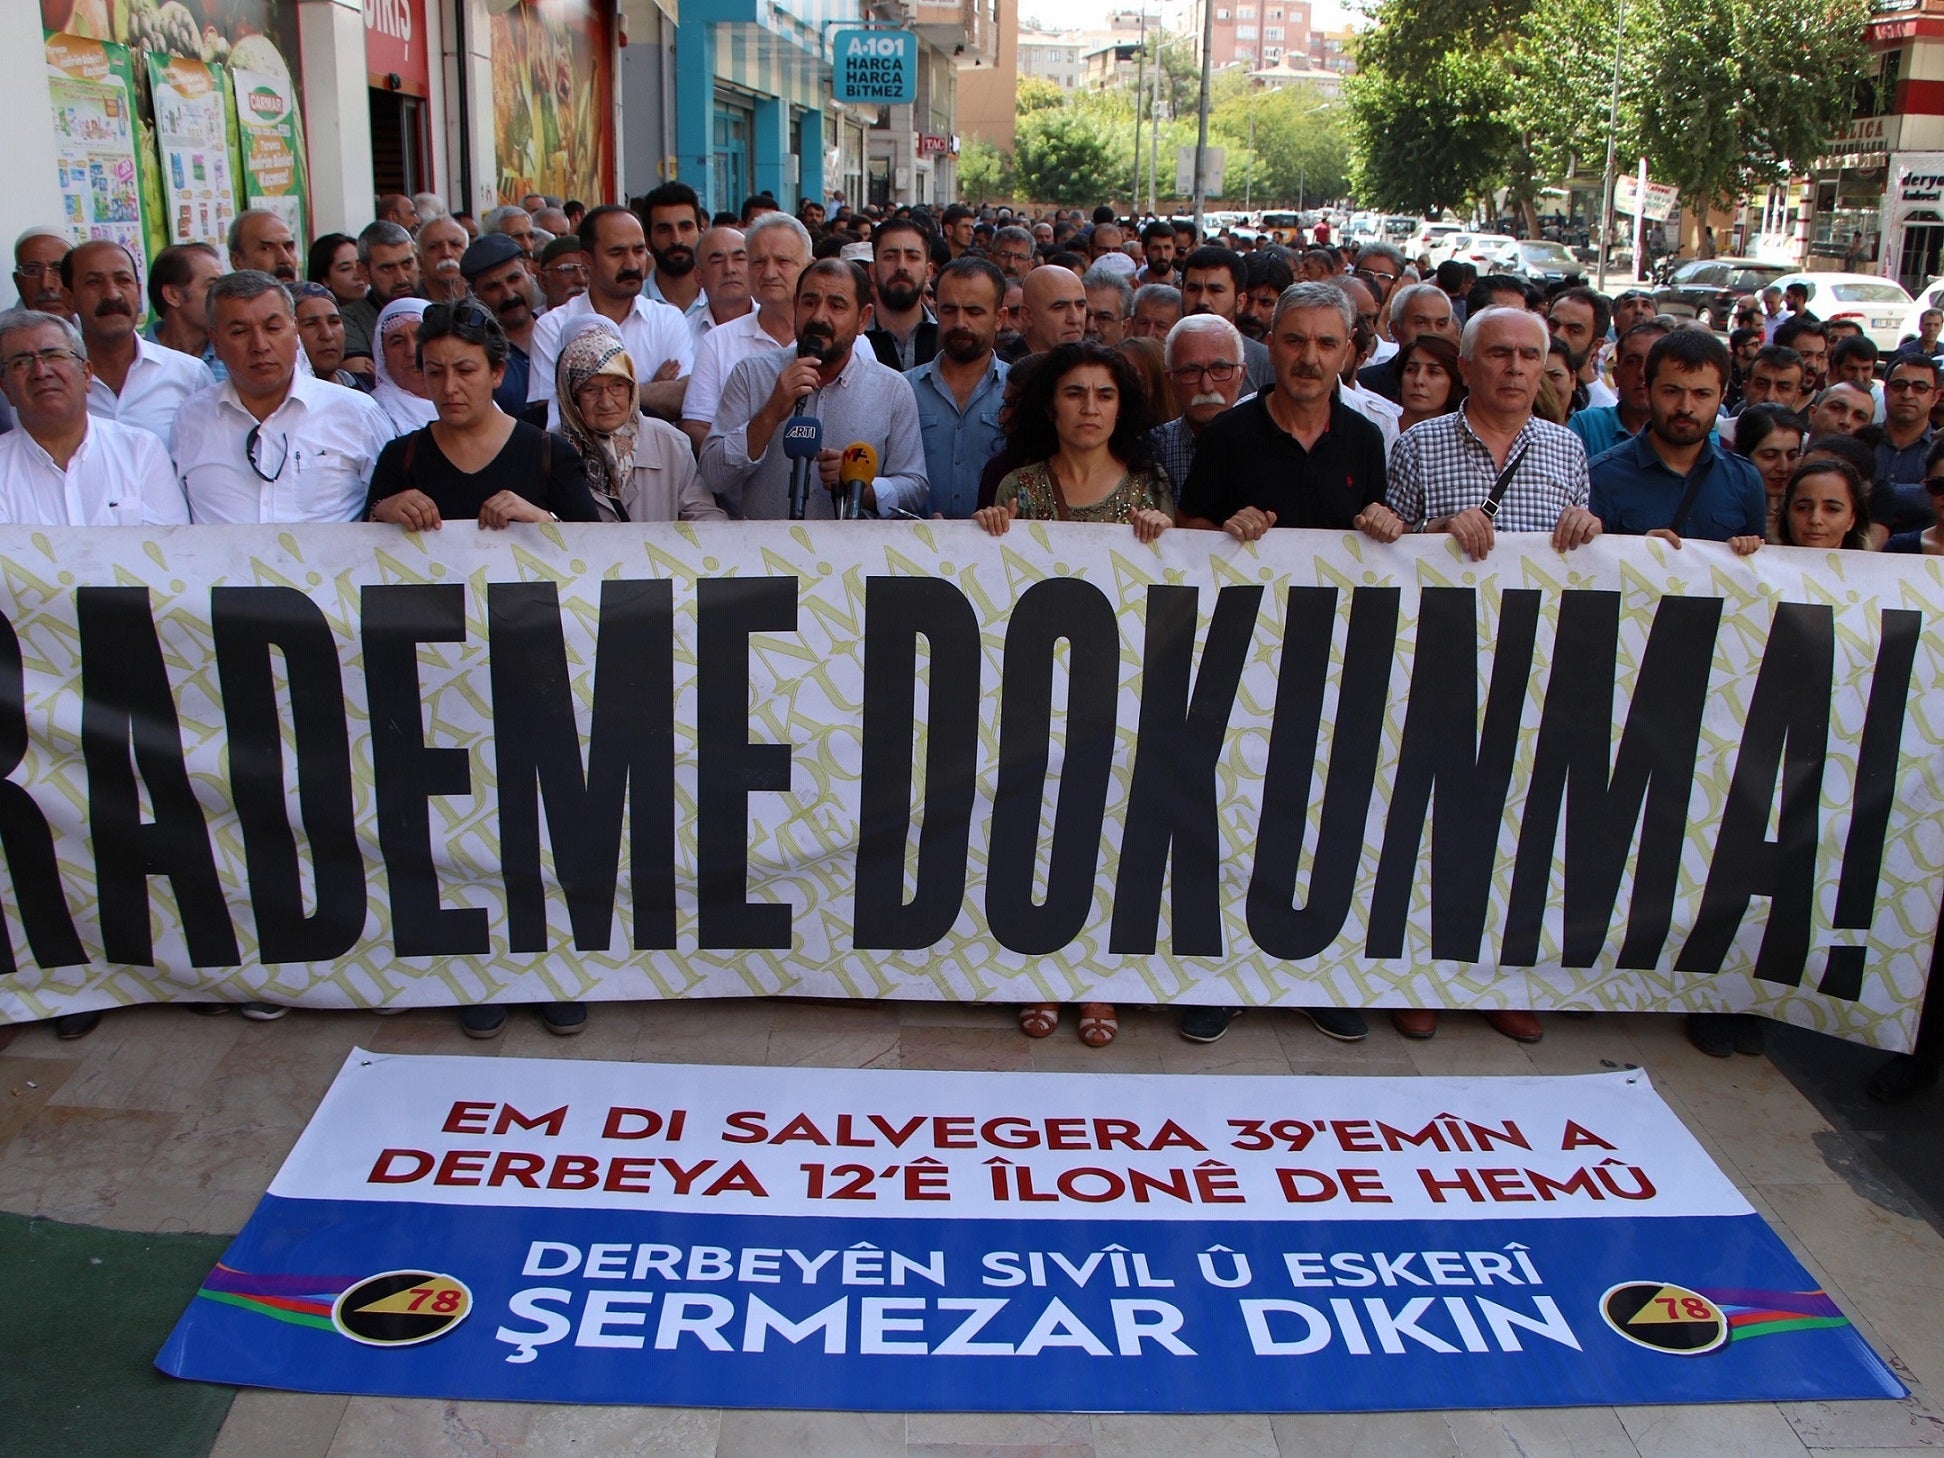 Diyarbakırlılar, seçilmiş belediye başkanlarının görevden alınmalarını protesto etmek için yaptıkları yürüyüşte pankart taşıyorlar